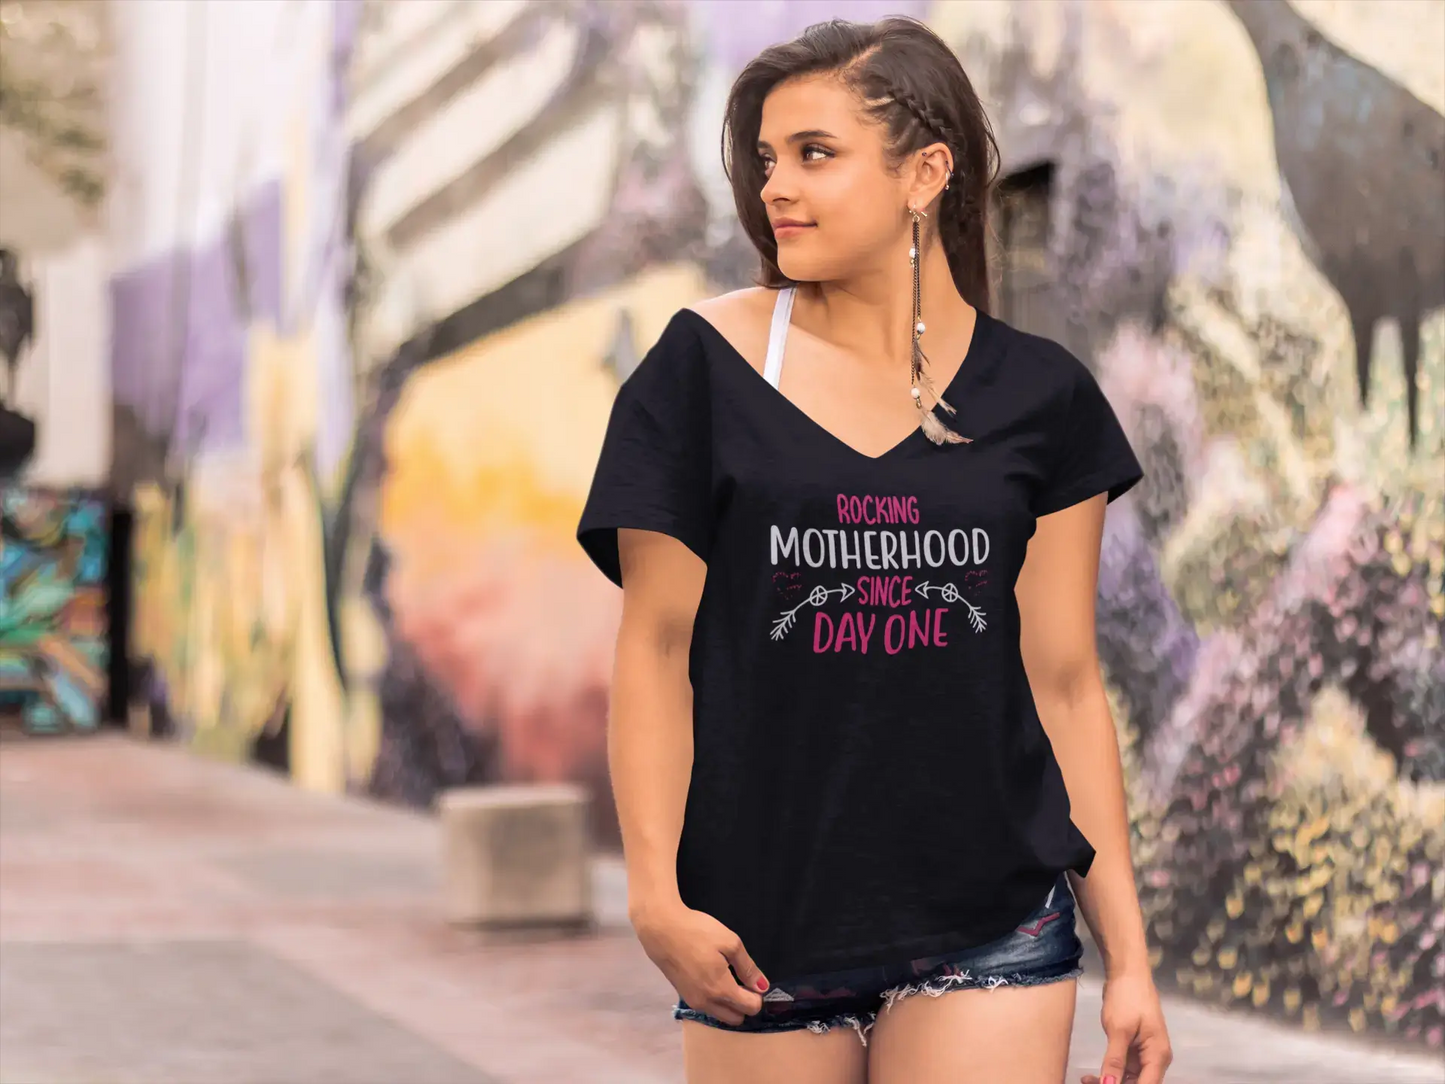 ULTRABASIC Women's T-Shirt Rocking Motherhood Since Day One - Short Sleeve Tee Shirt Tops